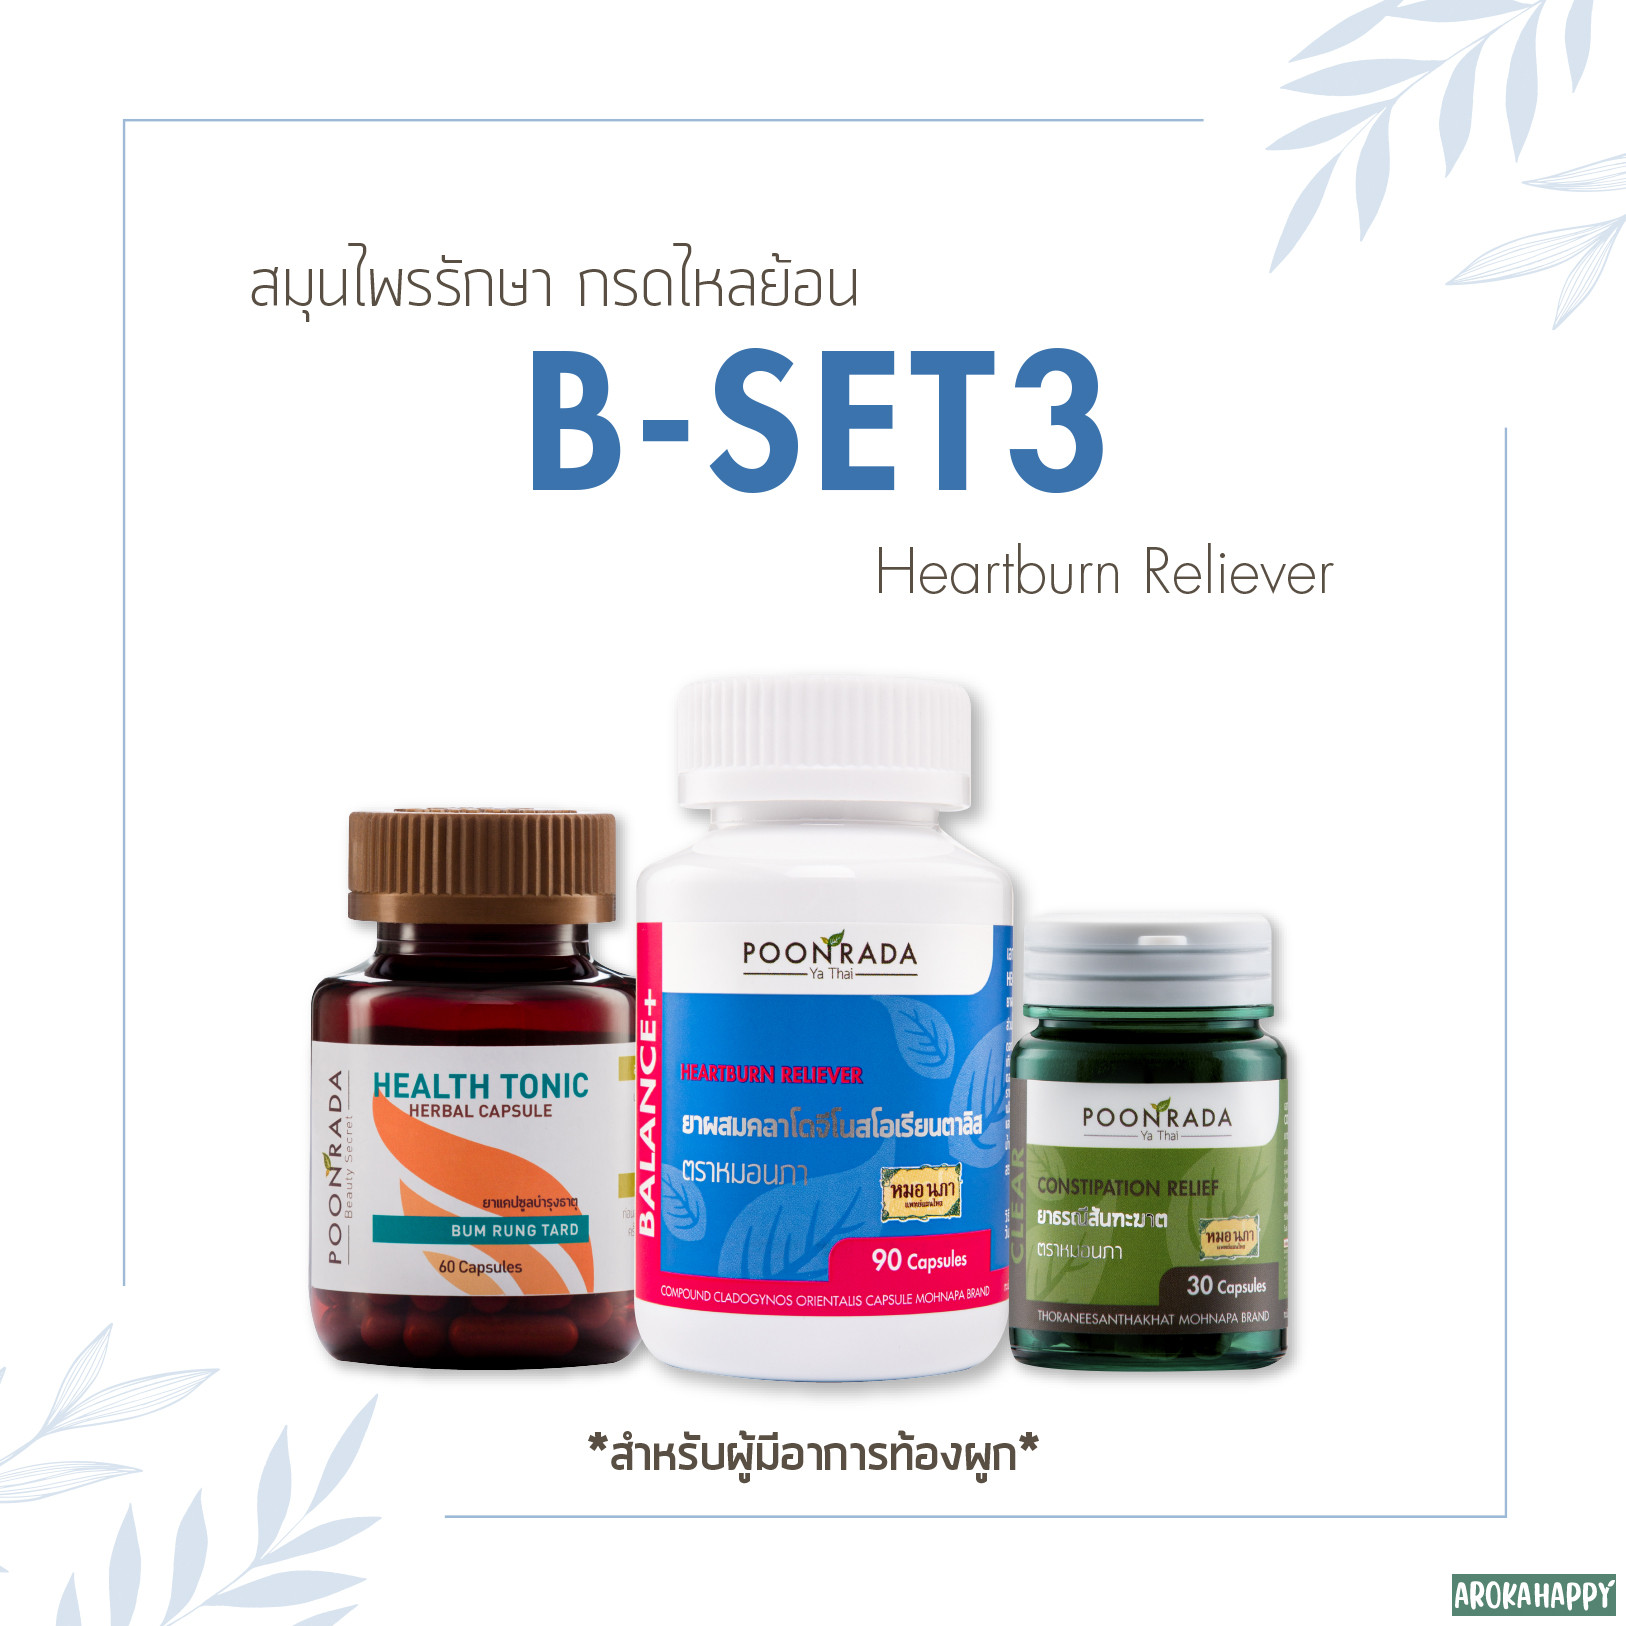 B-SET 3 สมุนไพรรักษากรดไหลย้อน สำหรับผู้มีอาการท้องผูก